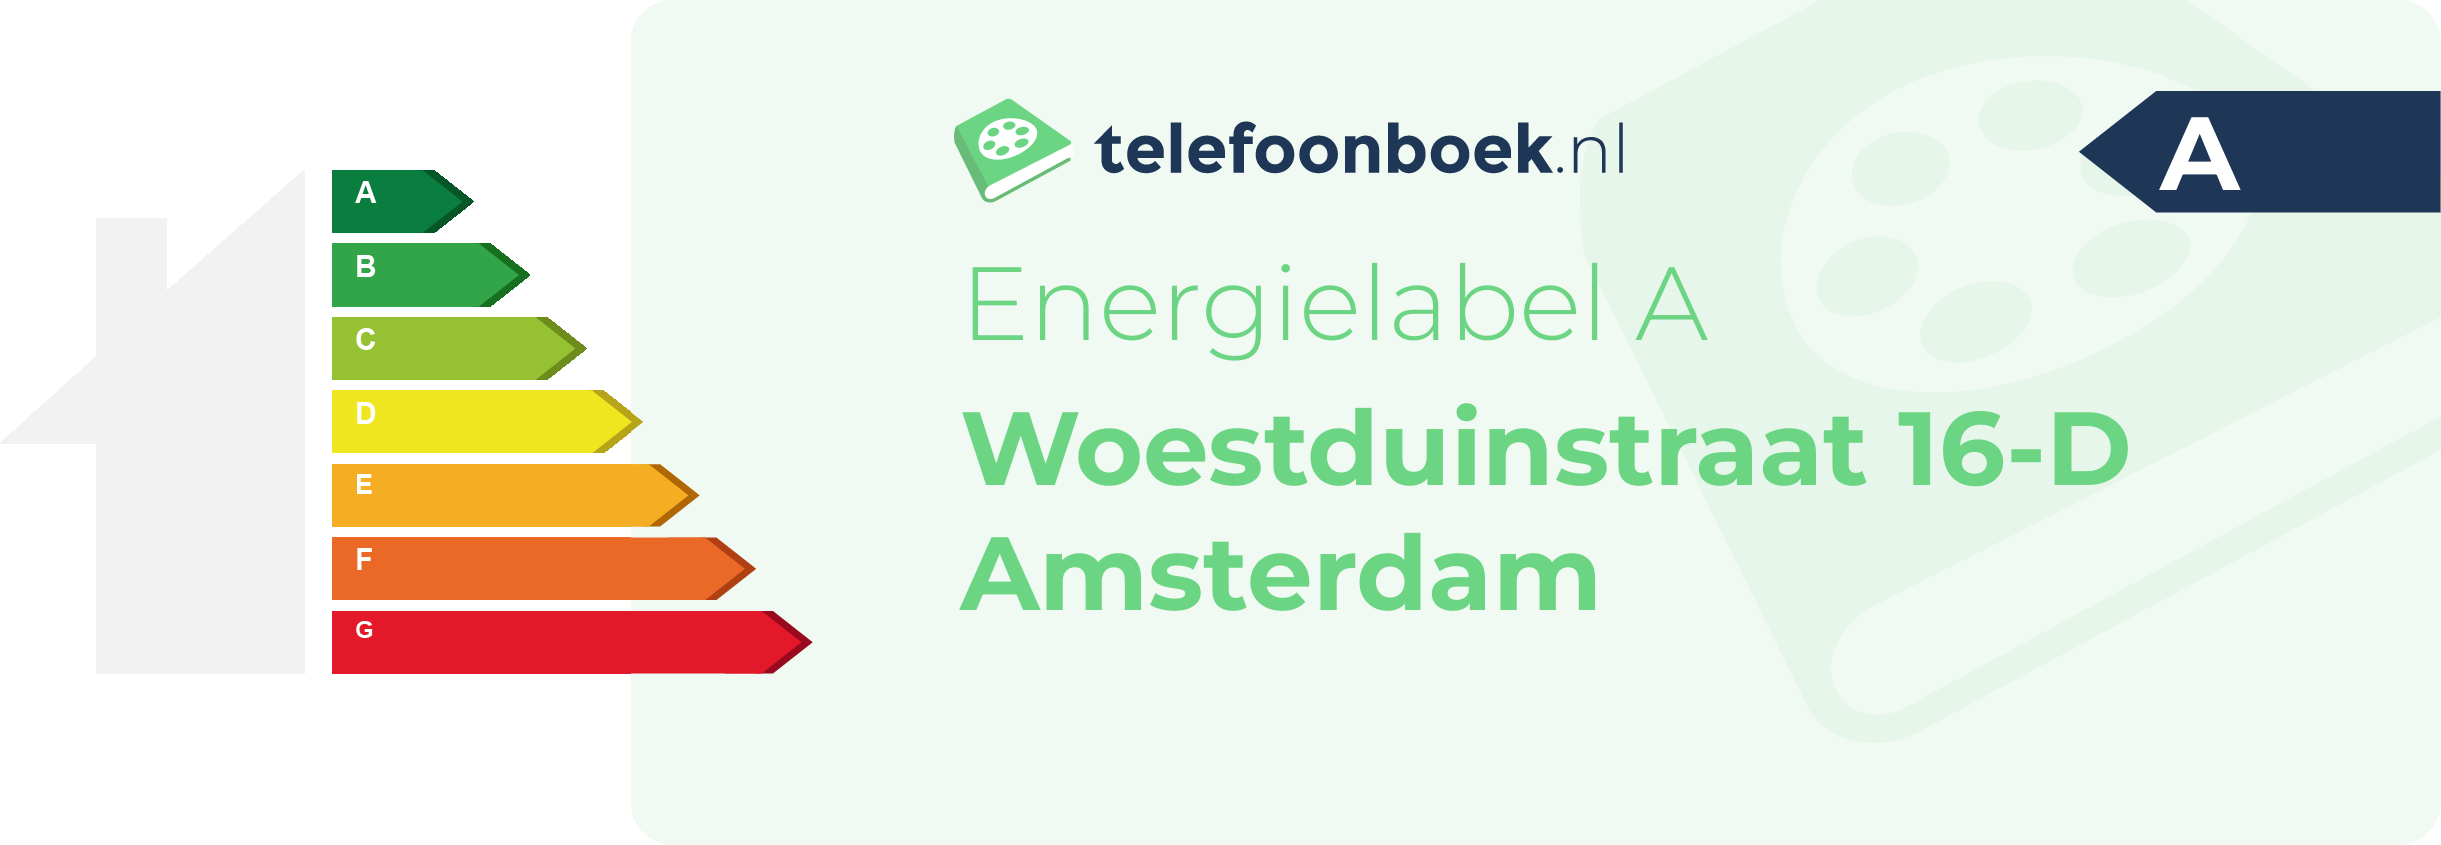 Energielabel Woestduinstraat 16-D Amsterdam